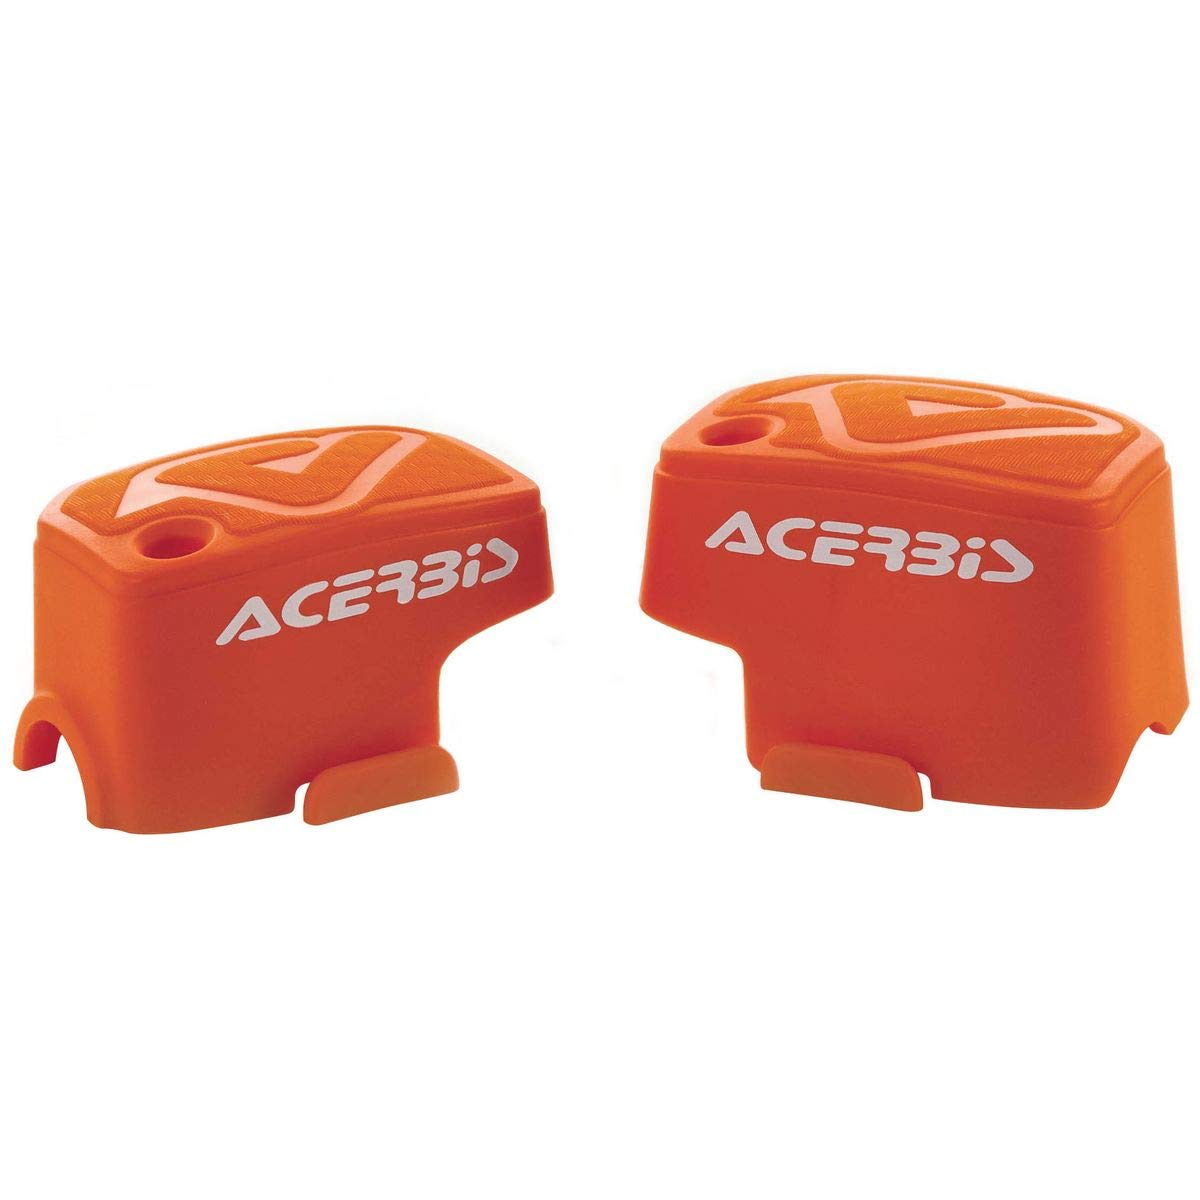 Acerbis 0021680.010 Brembo Brembo Kupplungs- und Bremssattel 2014 Orange von Acerbis